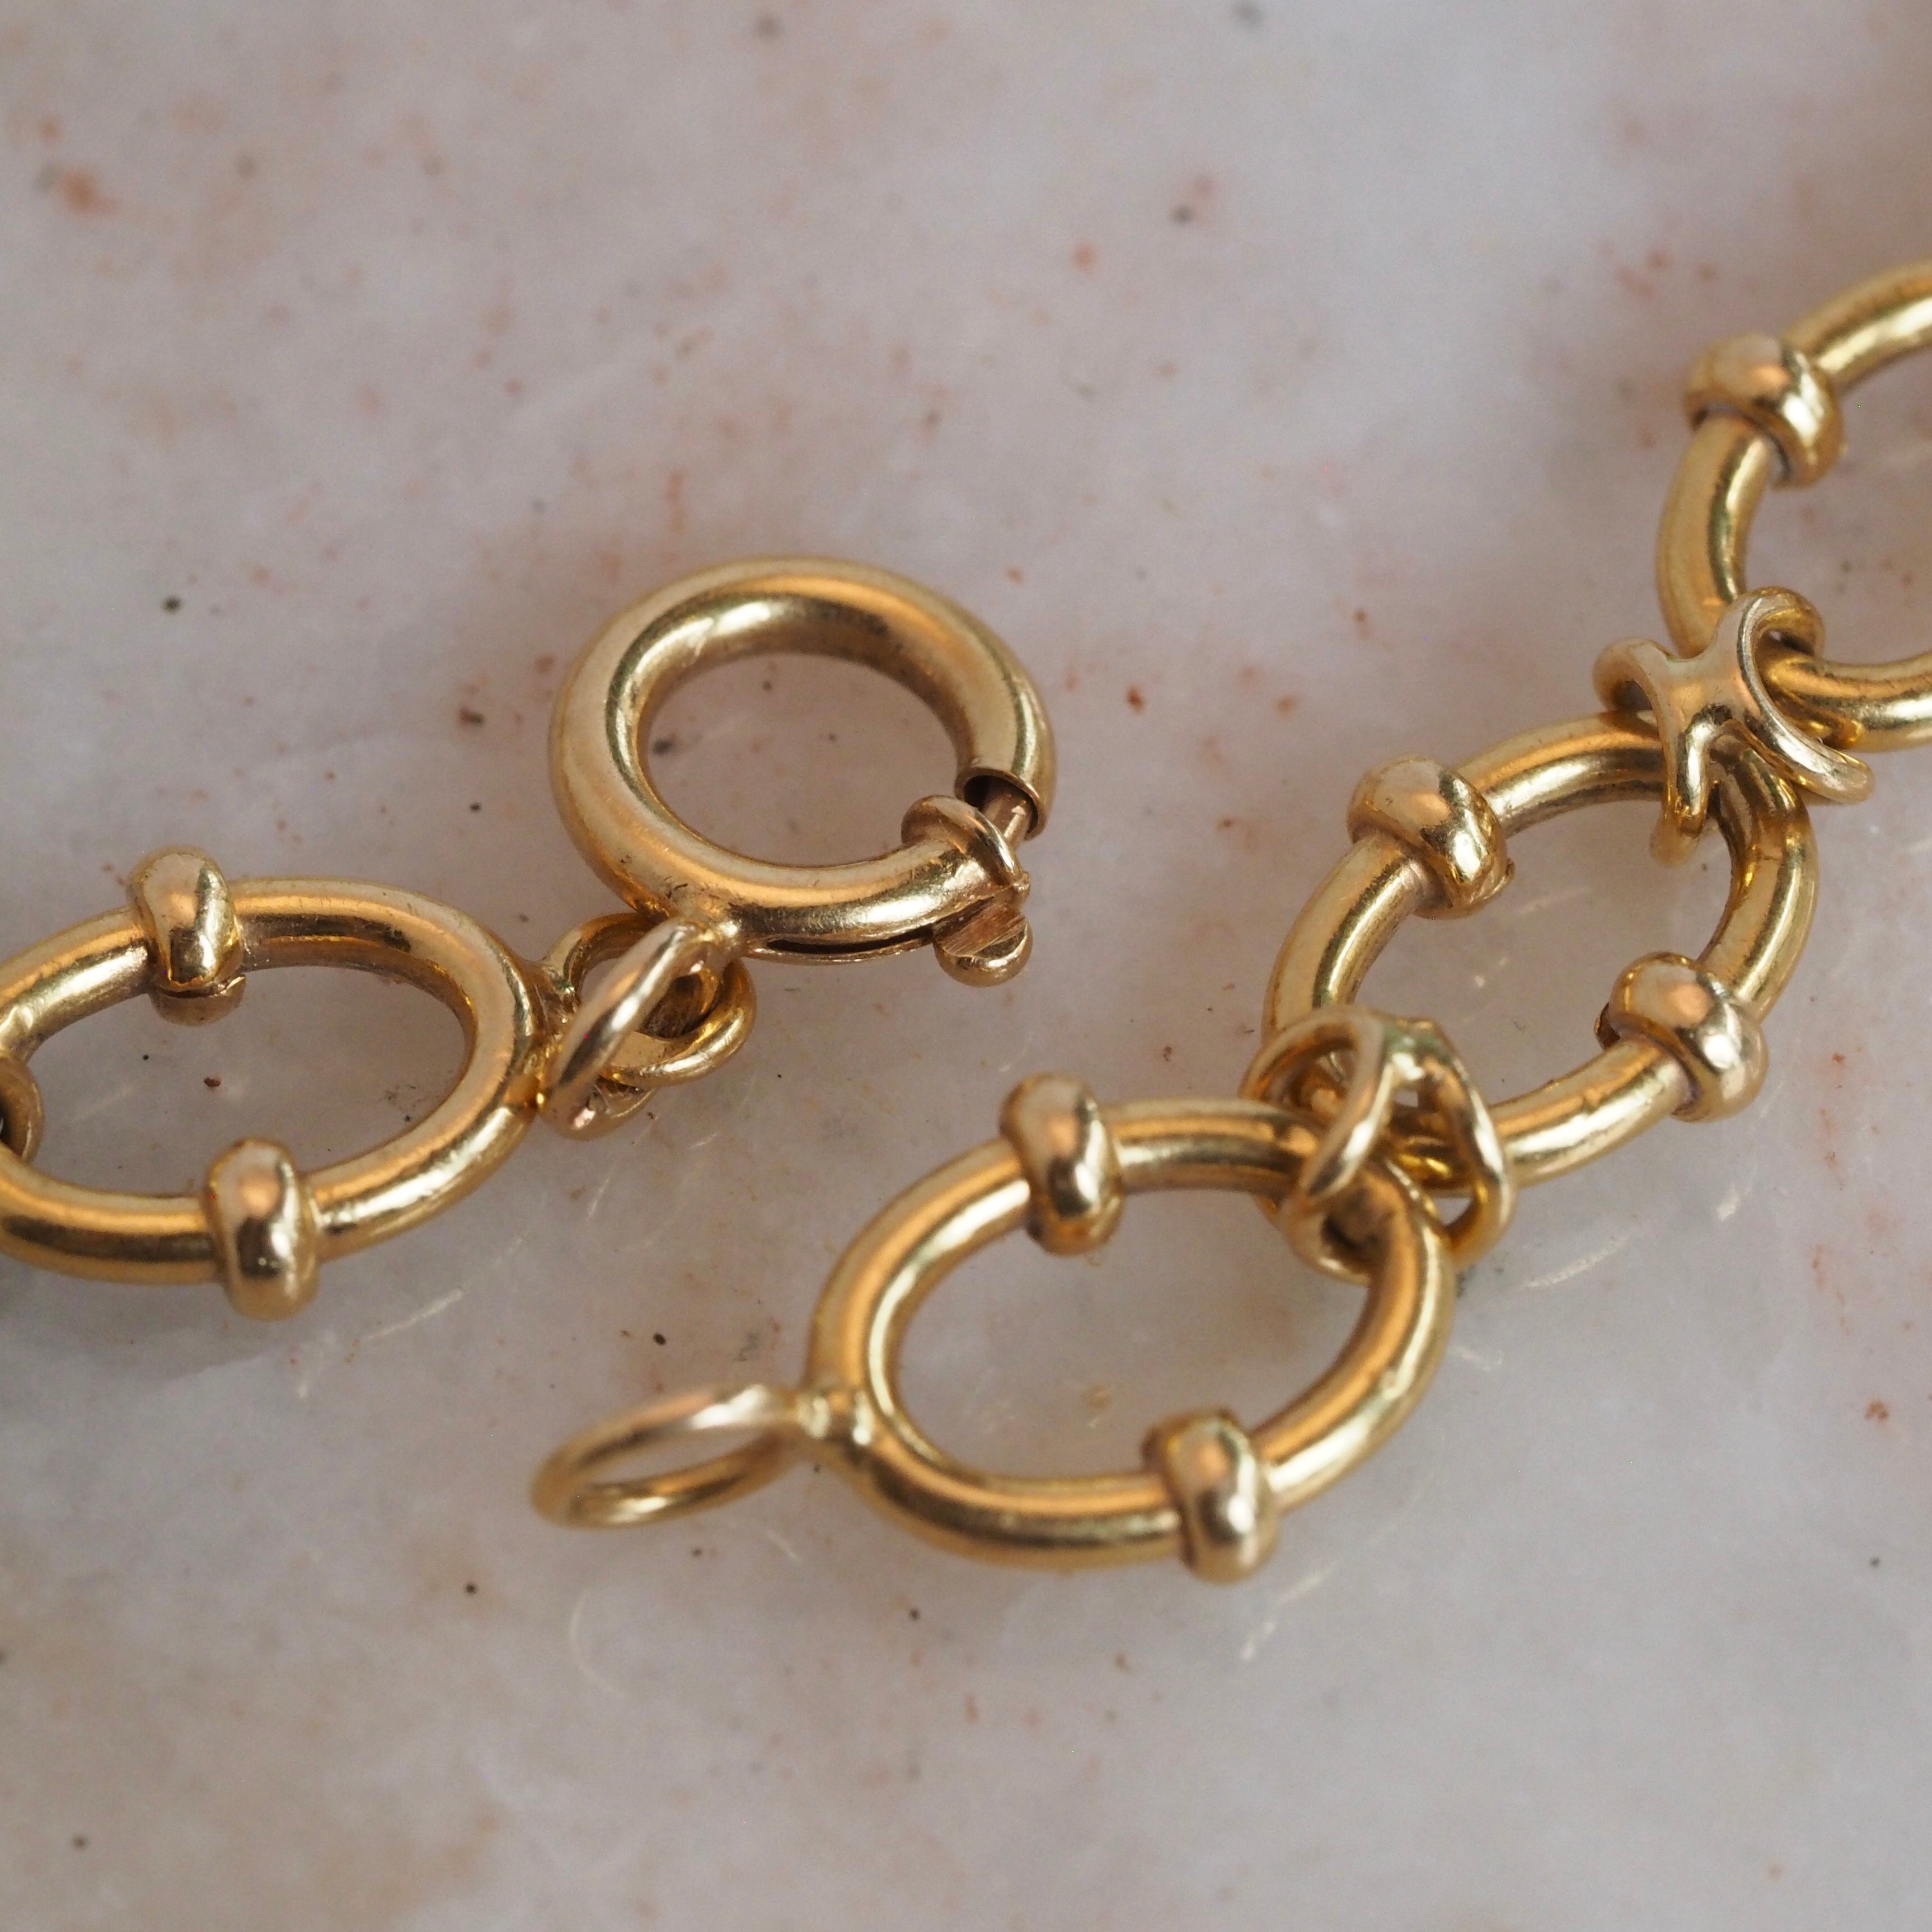 Vintage Portuguese 19k Gold Banded Oval Chain Bracelet